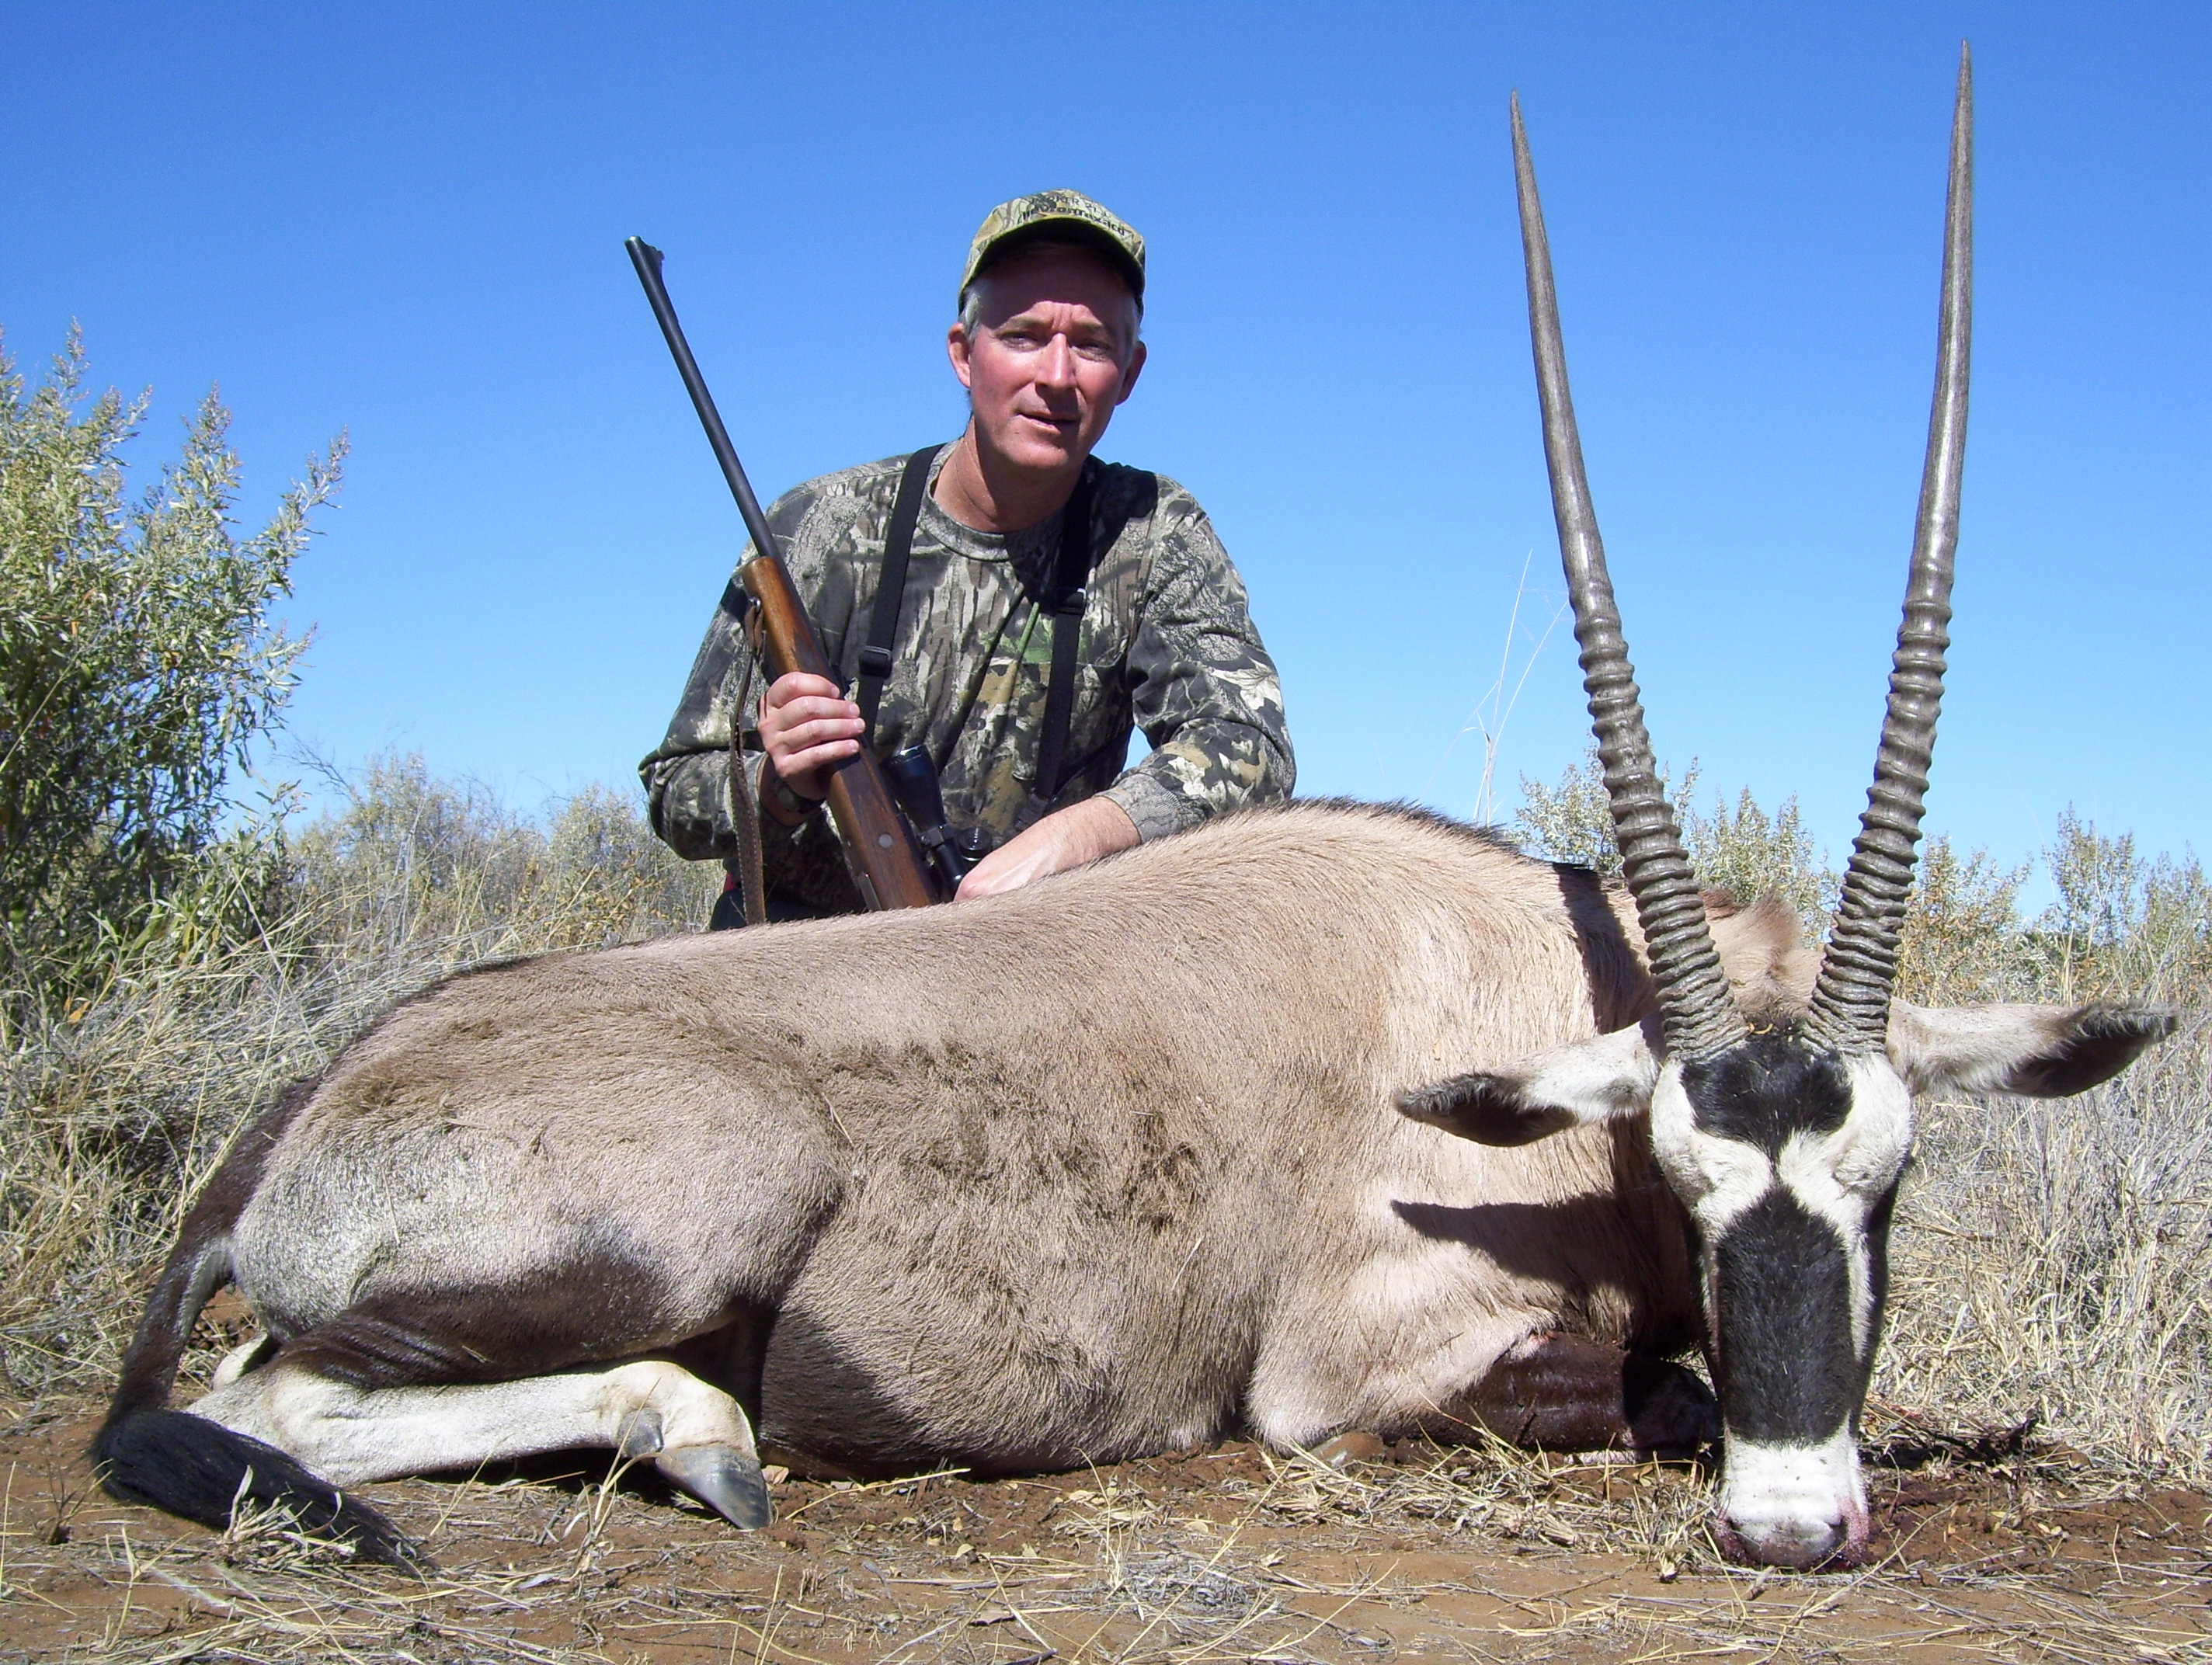 Oryx (Gemsbok) Namibia 2007.jpg